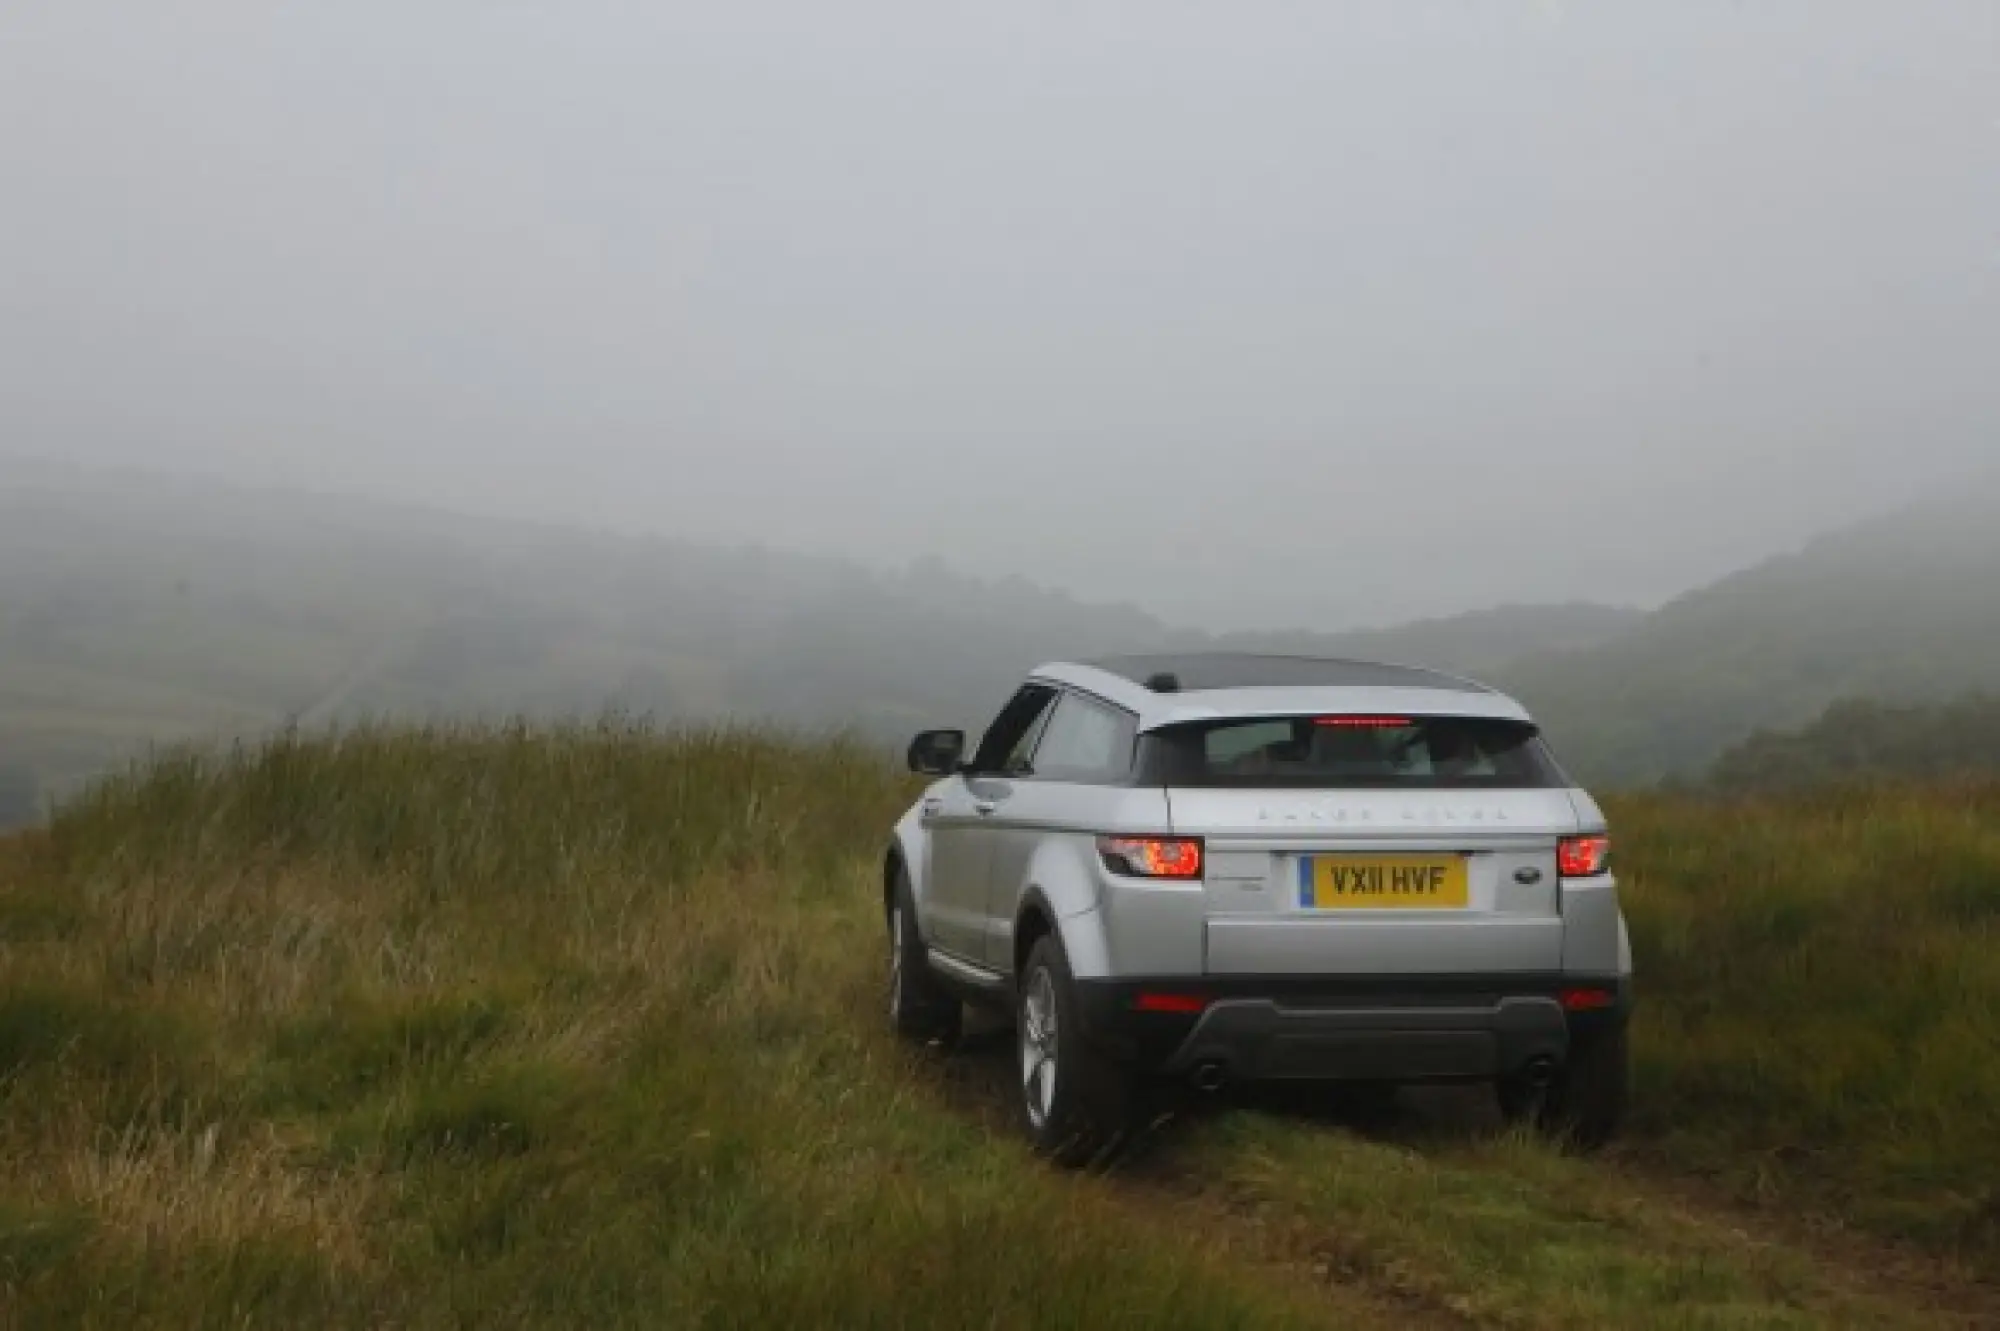 Land Rover Range Rover Evoque nuove foto ufficiali - 147